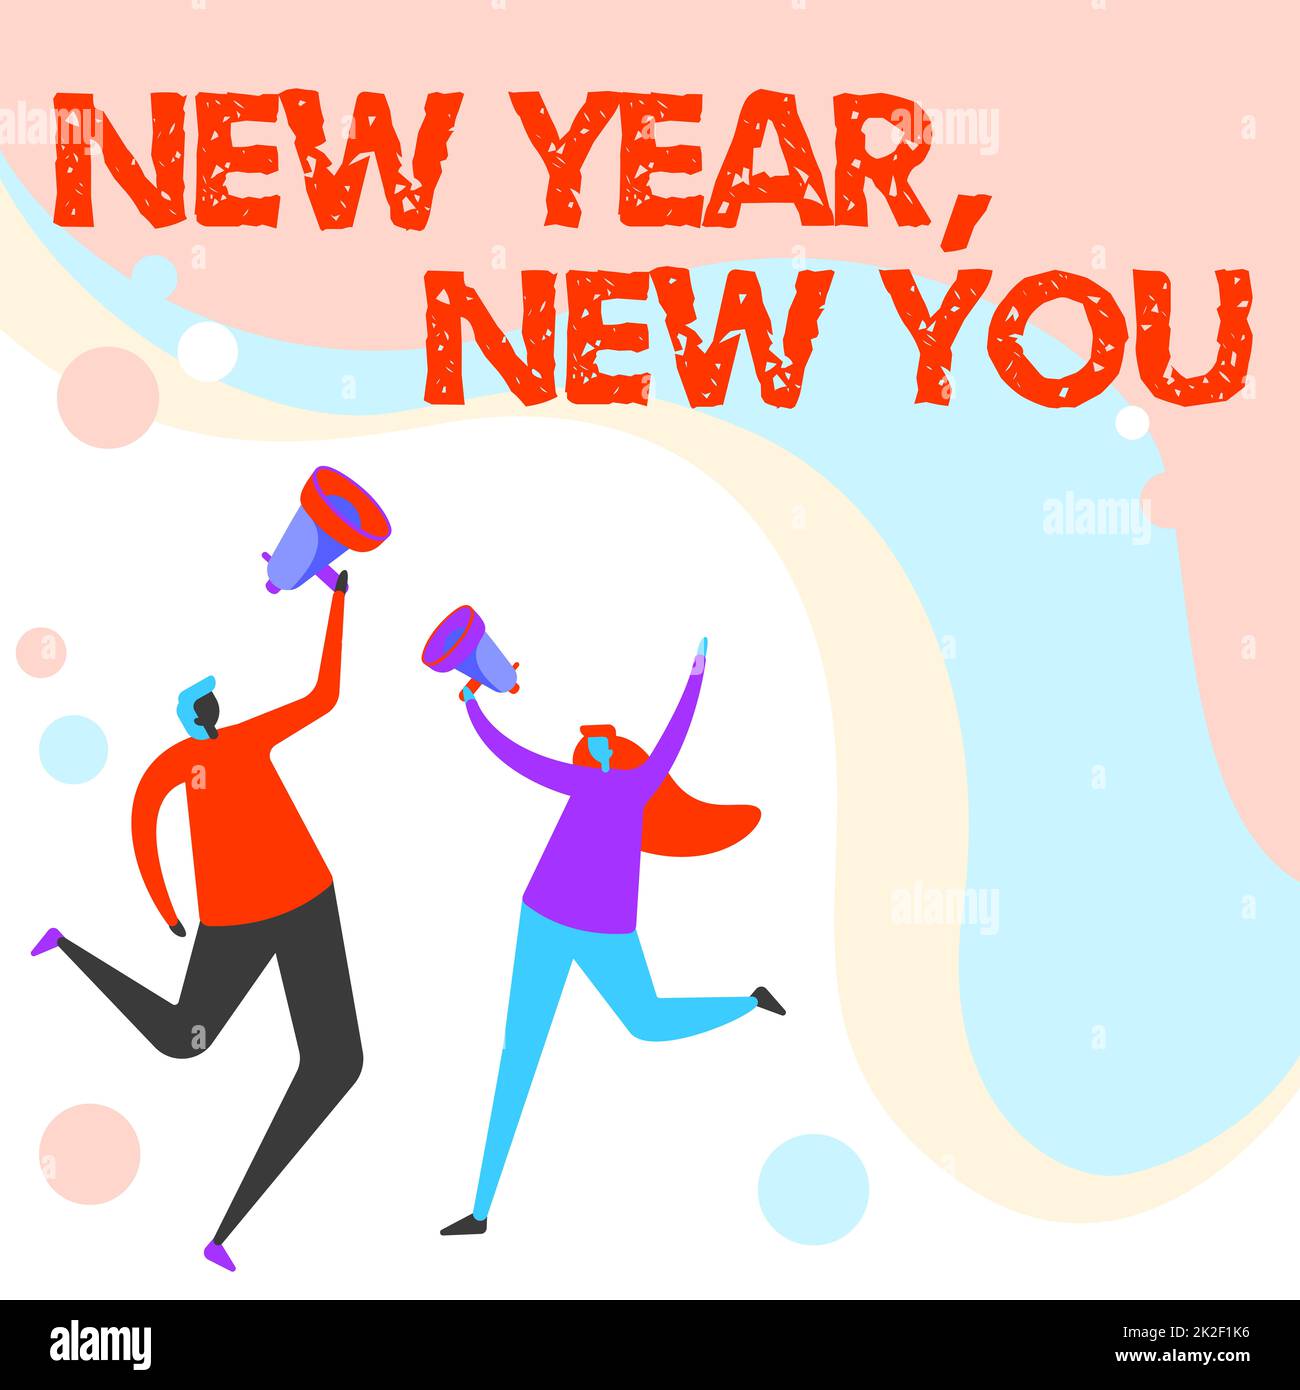 Handschrift für New Year New You. Internetkonzept 365 Tage voller Gelegenheiten, Ihre Erwartungen zu ändern Illustration von Partnern, die umherspringen und Gedanken über Megaphone teilen. Stockfoto